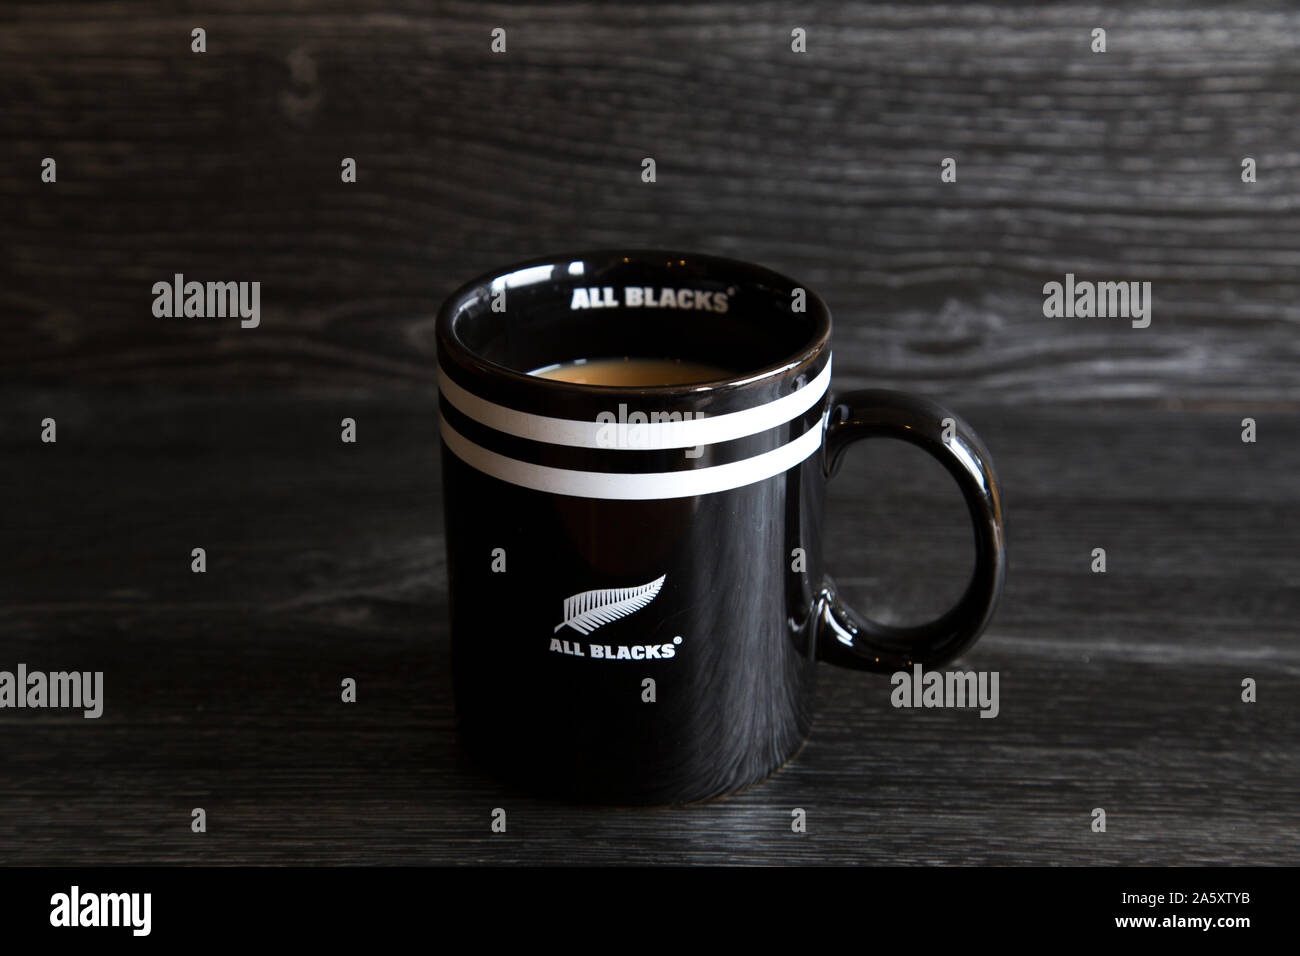 Tazza di tè ricavato in un All Blacks cup. Tutti i neri sono una delle migliori squadre di rugby in tutto il mondo. Forte tè bianco seduto su di un legno scuro banco di cucina. Foto Stock